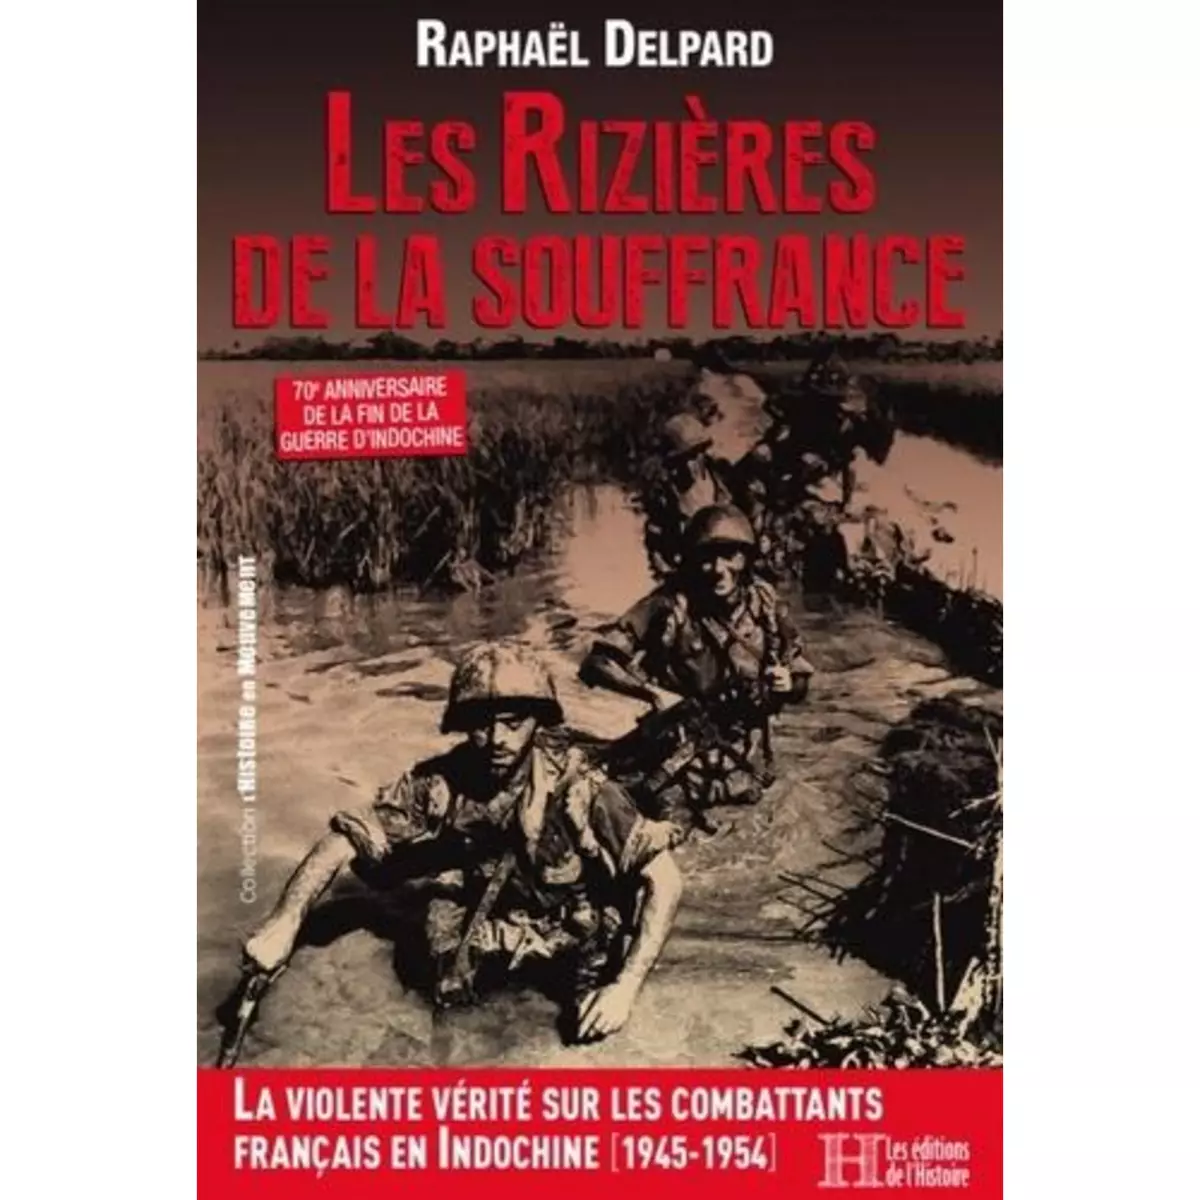  LES RIZIERES DE LA SOUFFRANCE. COMBATTANTS FRANCAIS EN INDOCHINE (1945-1954), Delpard Raphaël